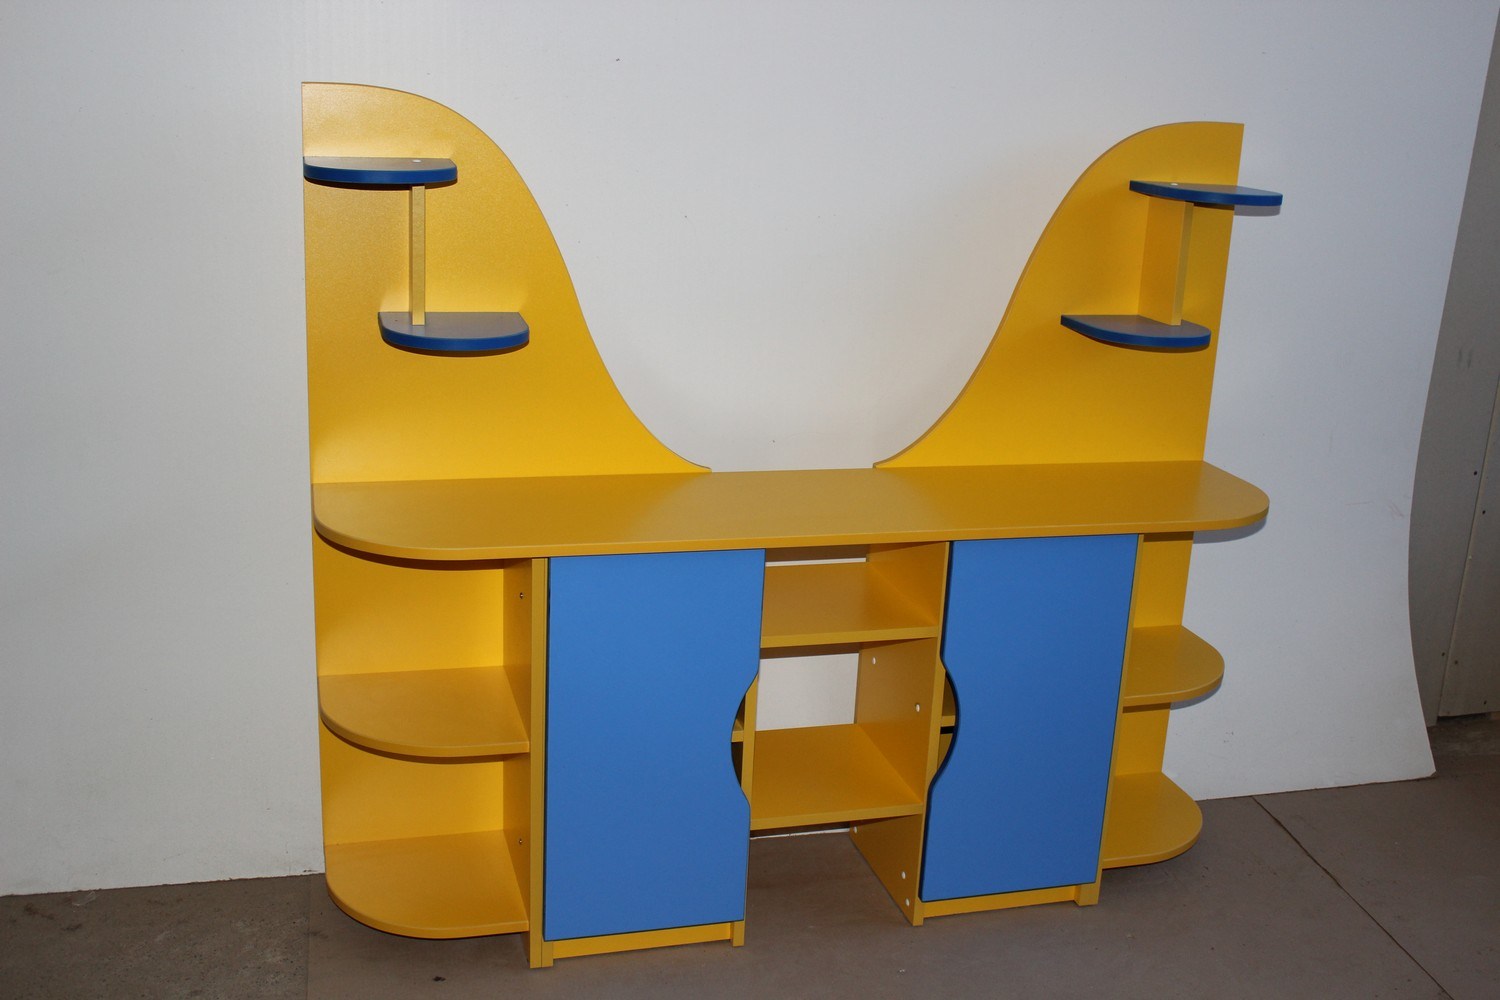 Мебель для уголка природы в детском саду